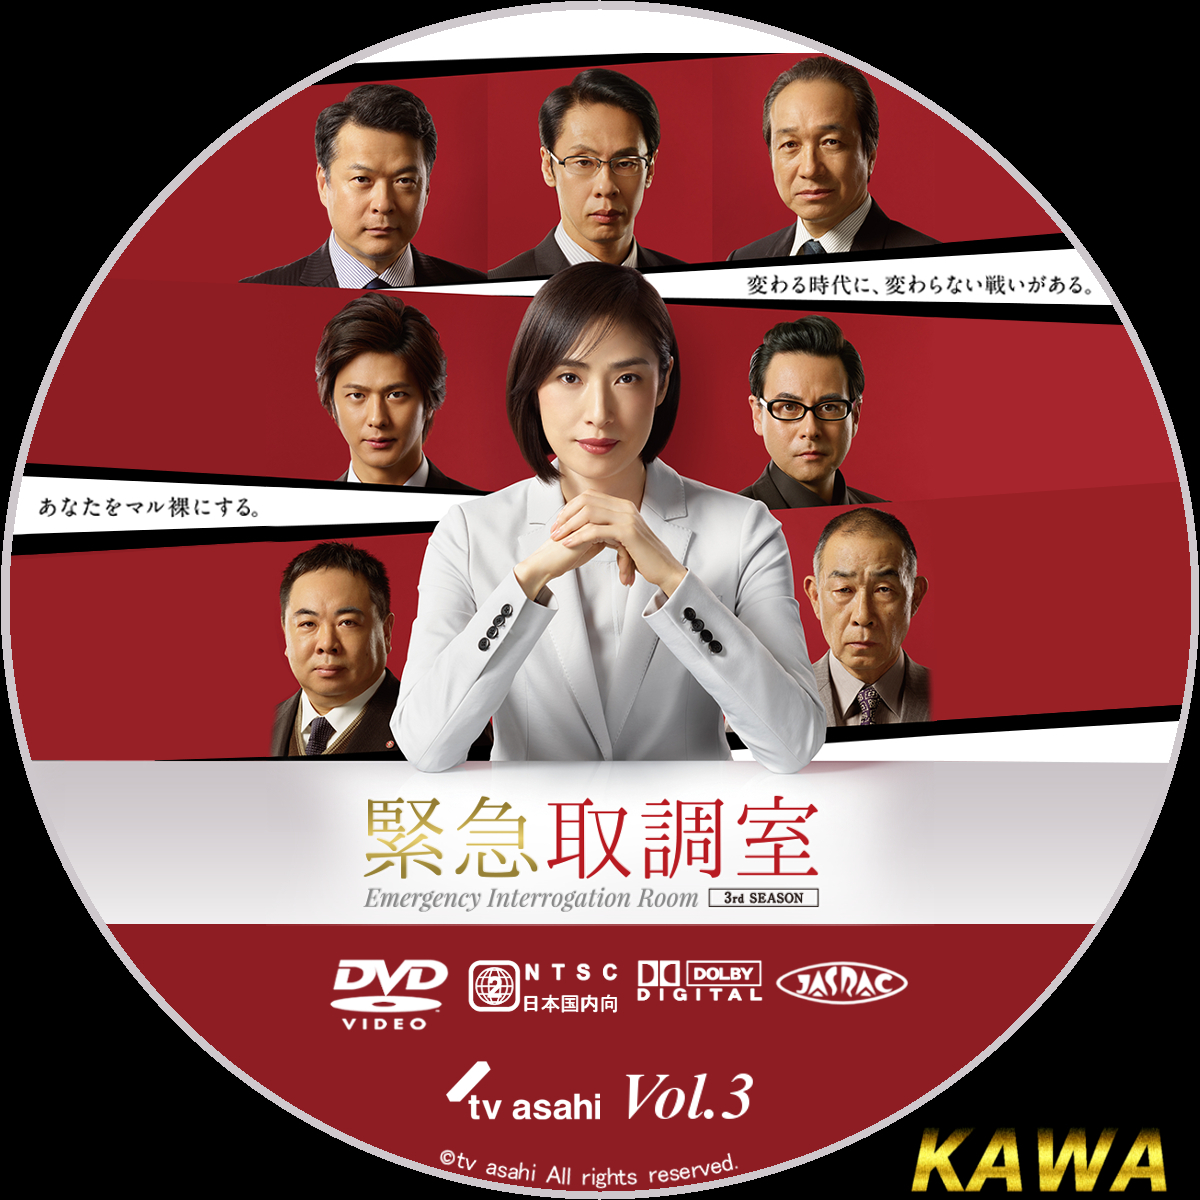 緊急取調室 3rdシーズン DVD 全巻 1-5巻 シーズン3 天海祐希 - TVドラマ